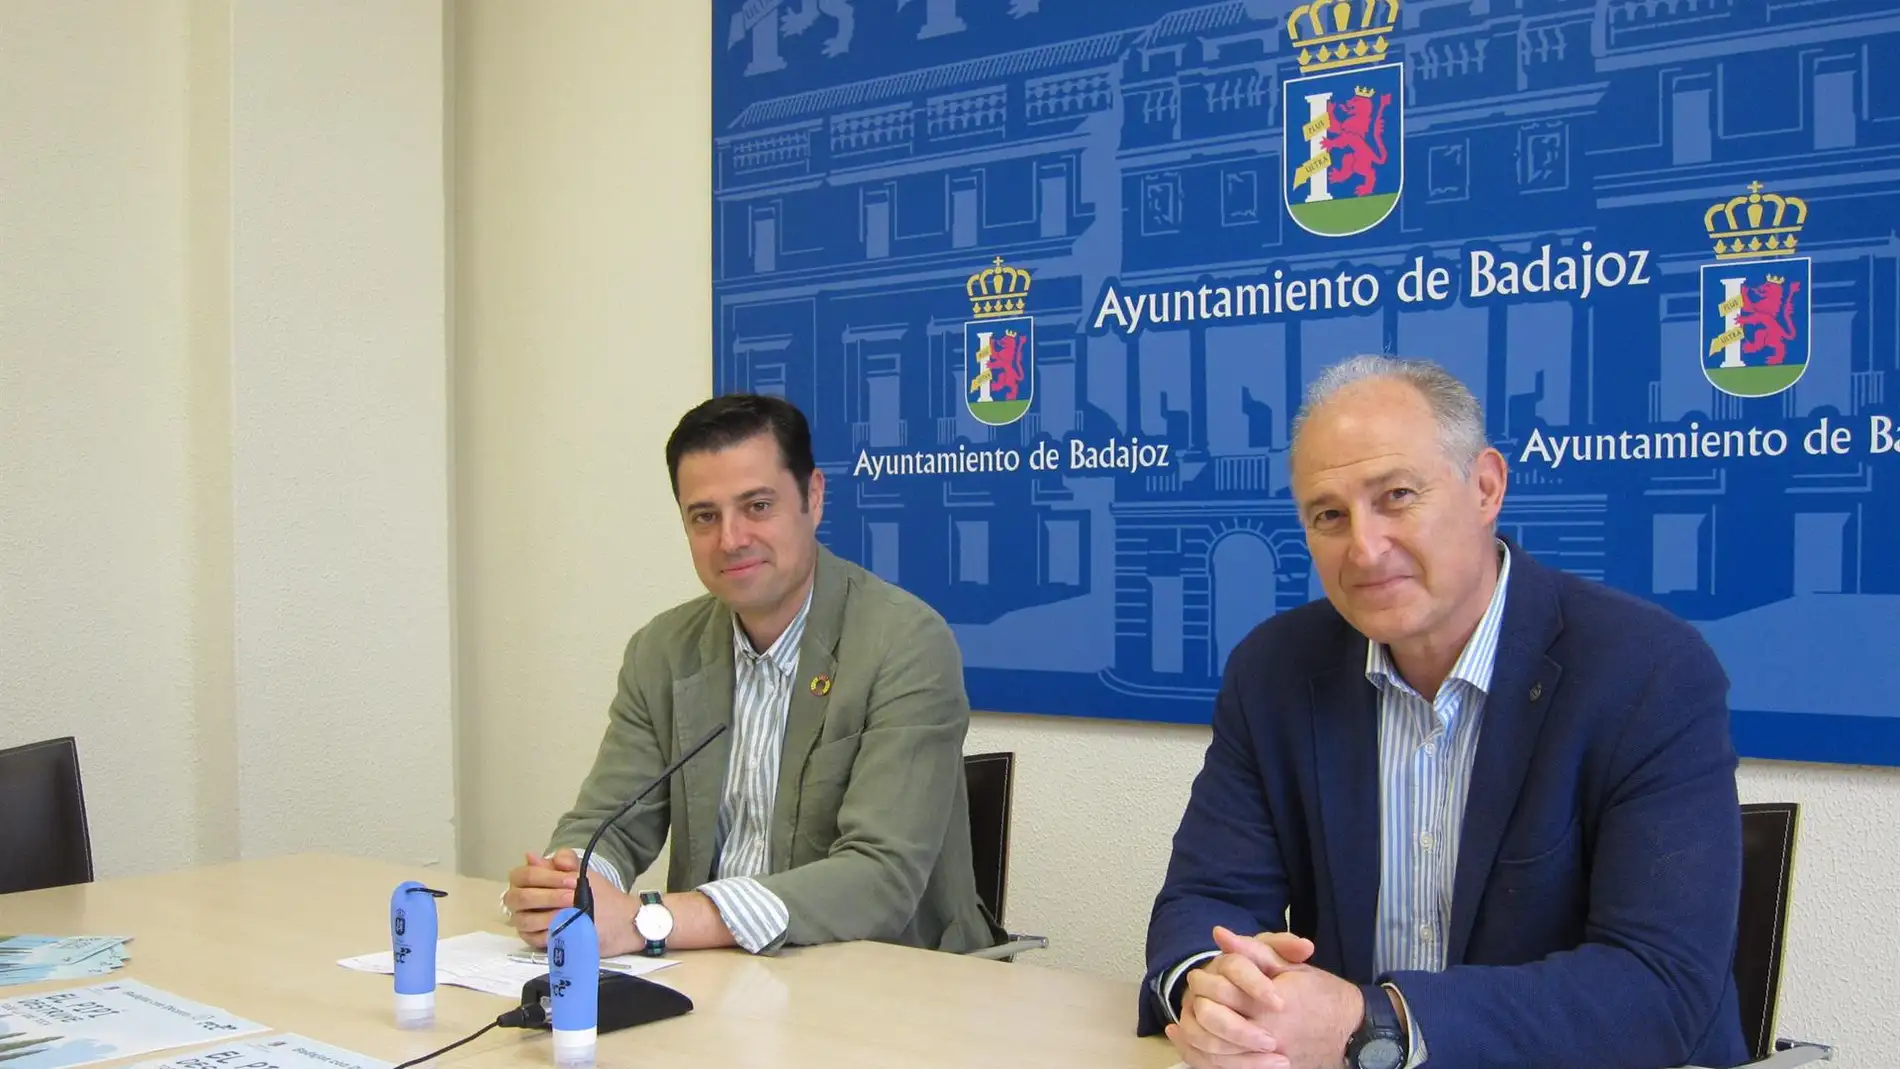 El Ayuntamiento de Badajoz lanza una nueva campaña para concienciar sobre la correcta limpieza del orín de los perros